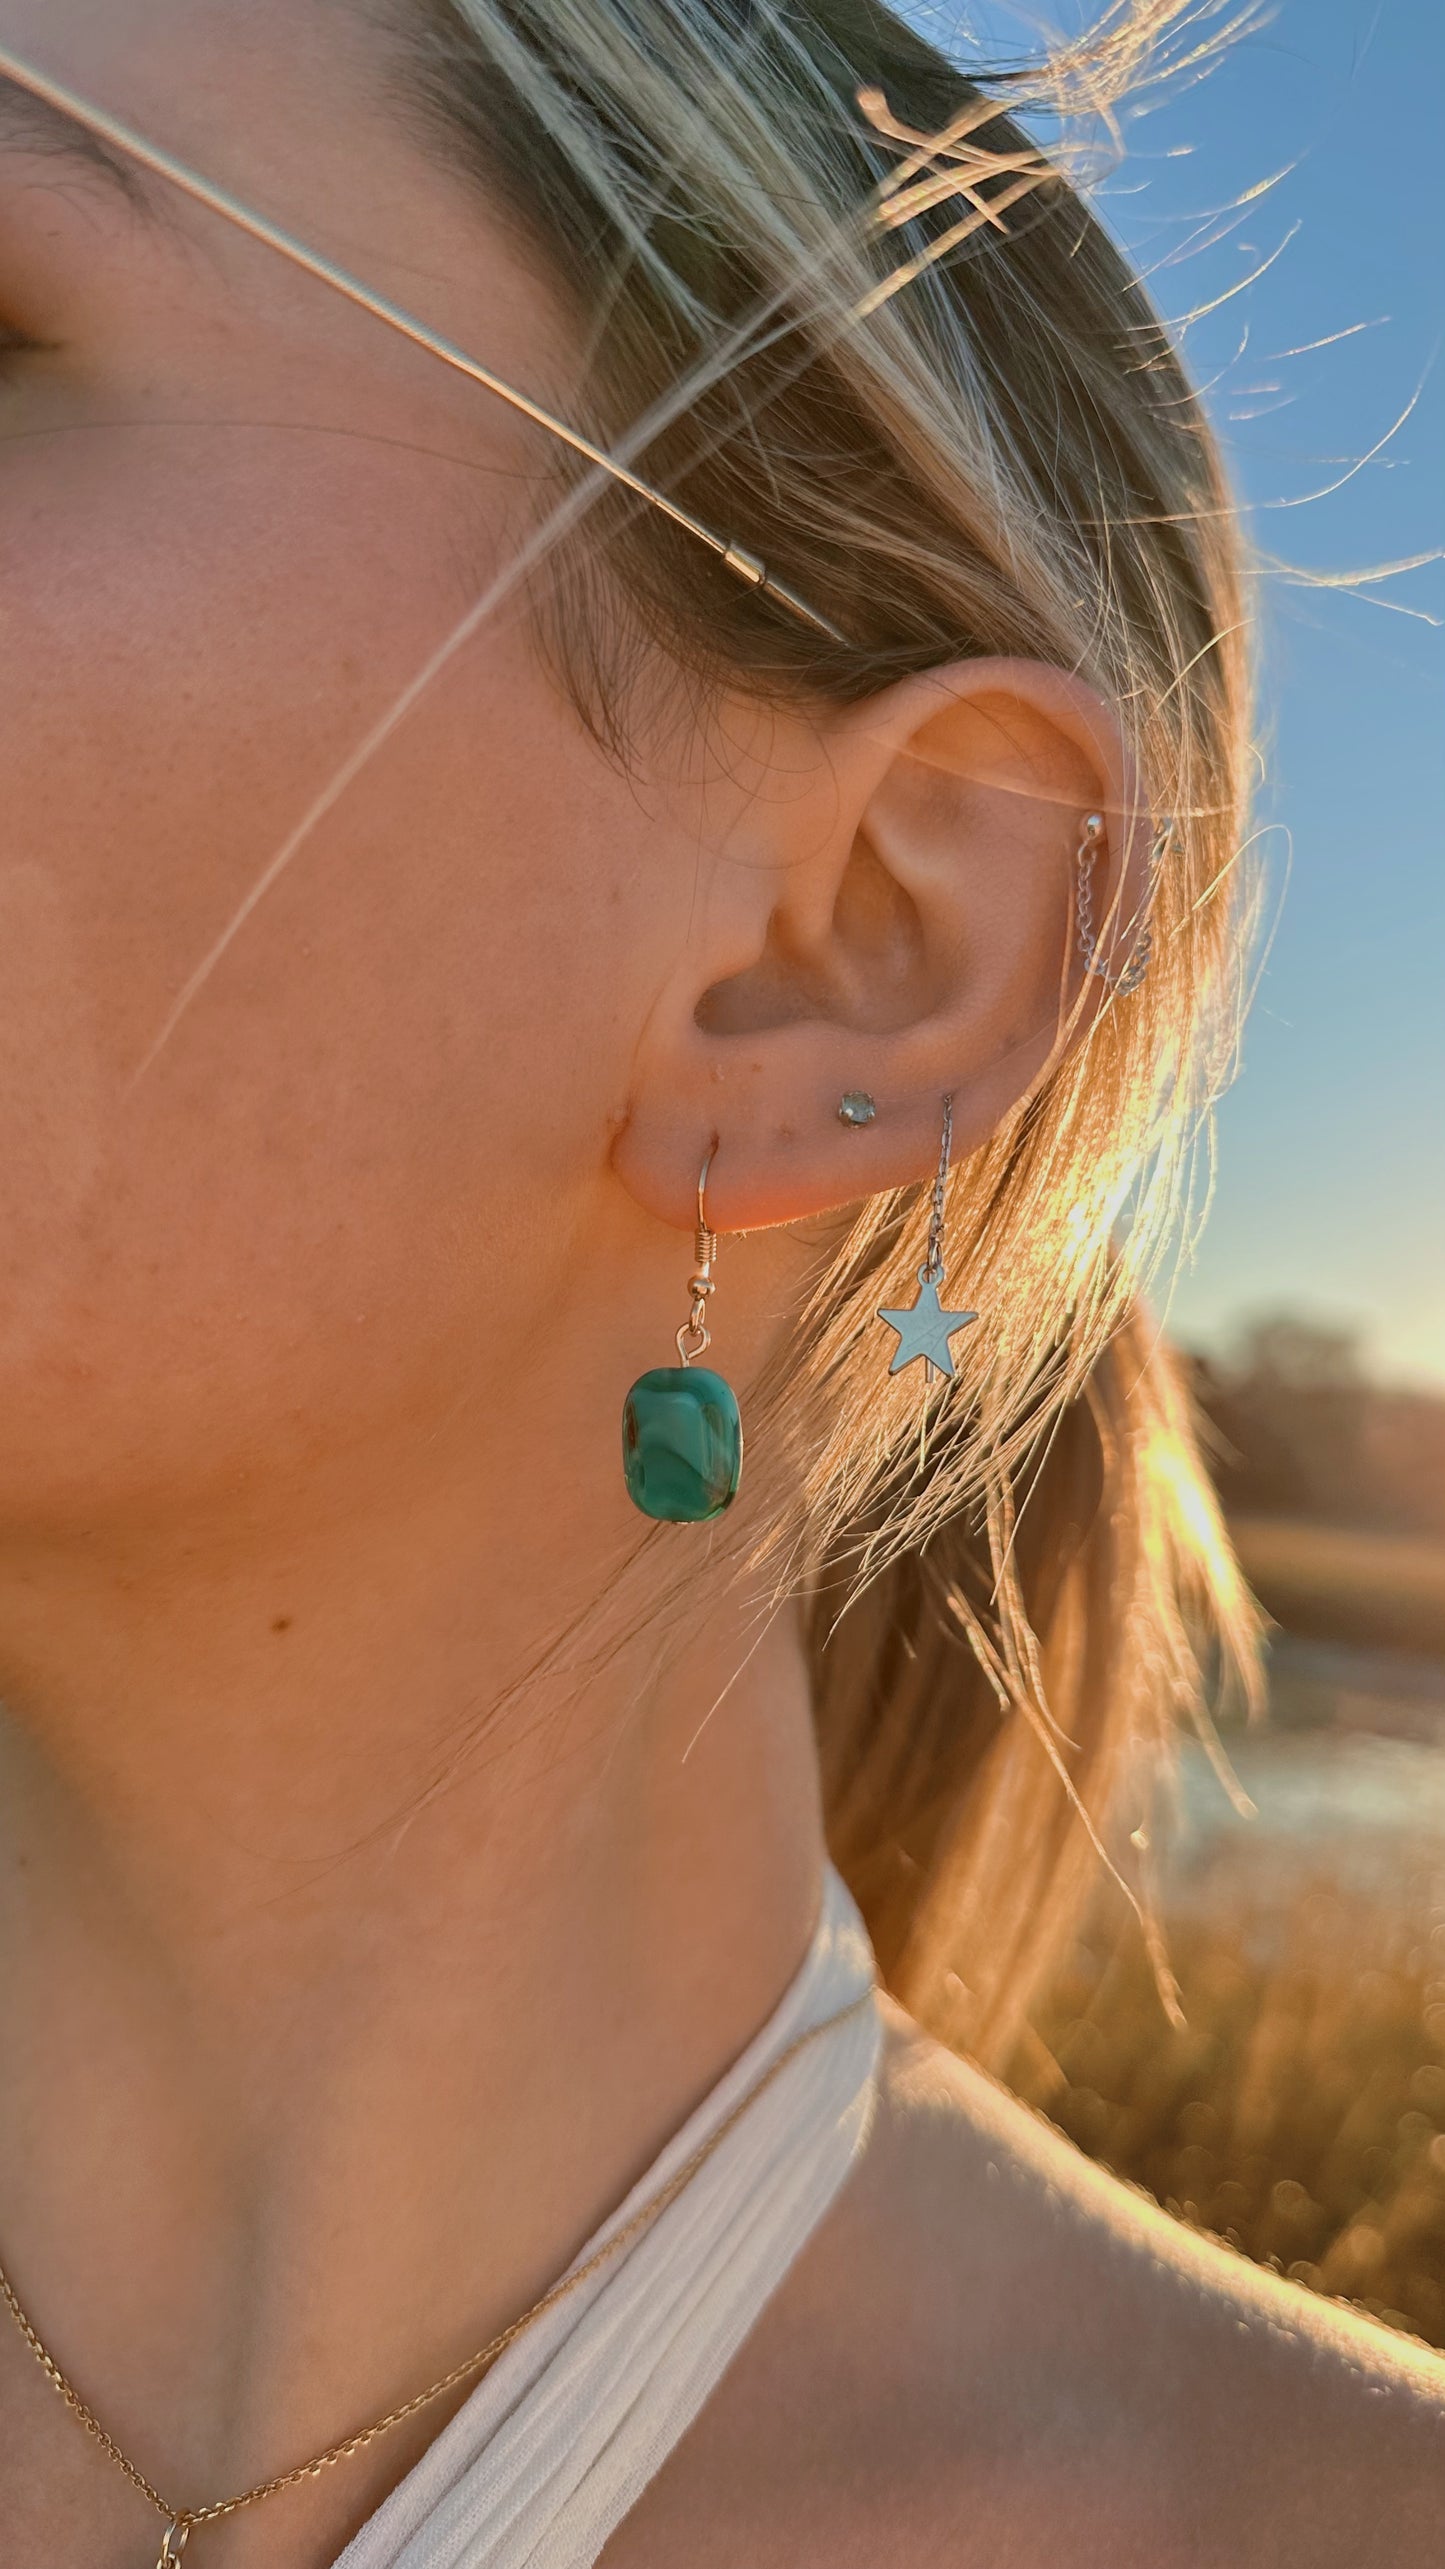 Blue glass swirl dangle earrings